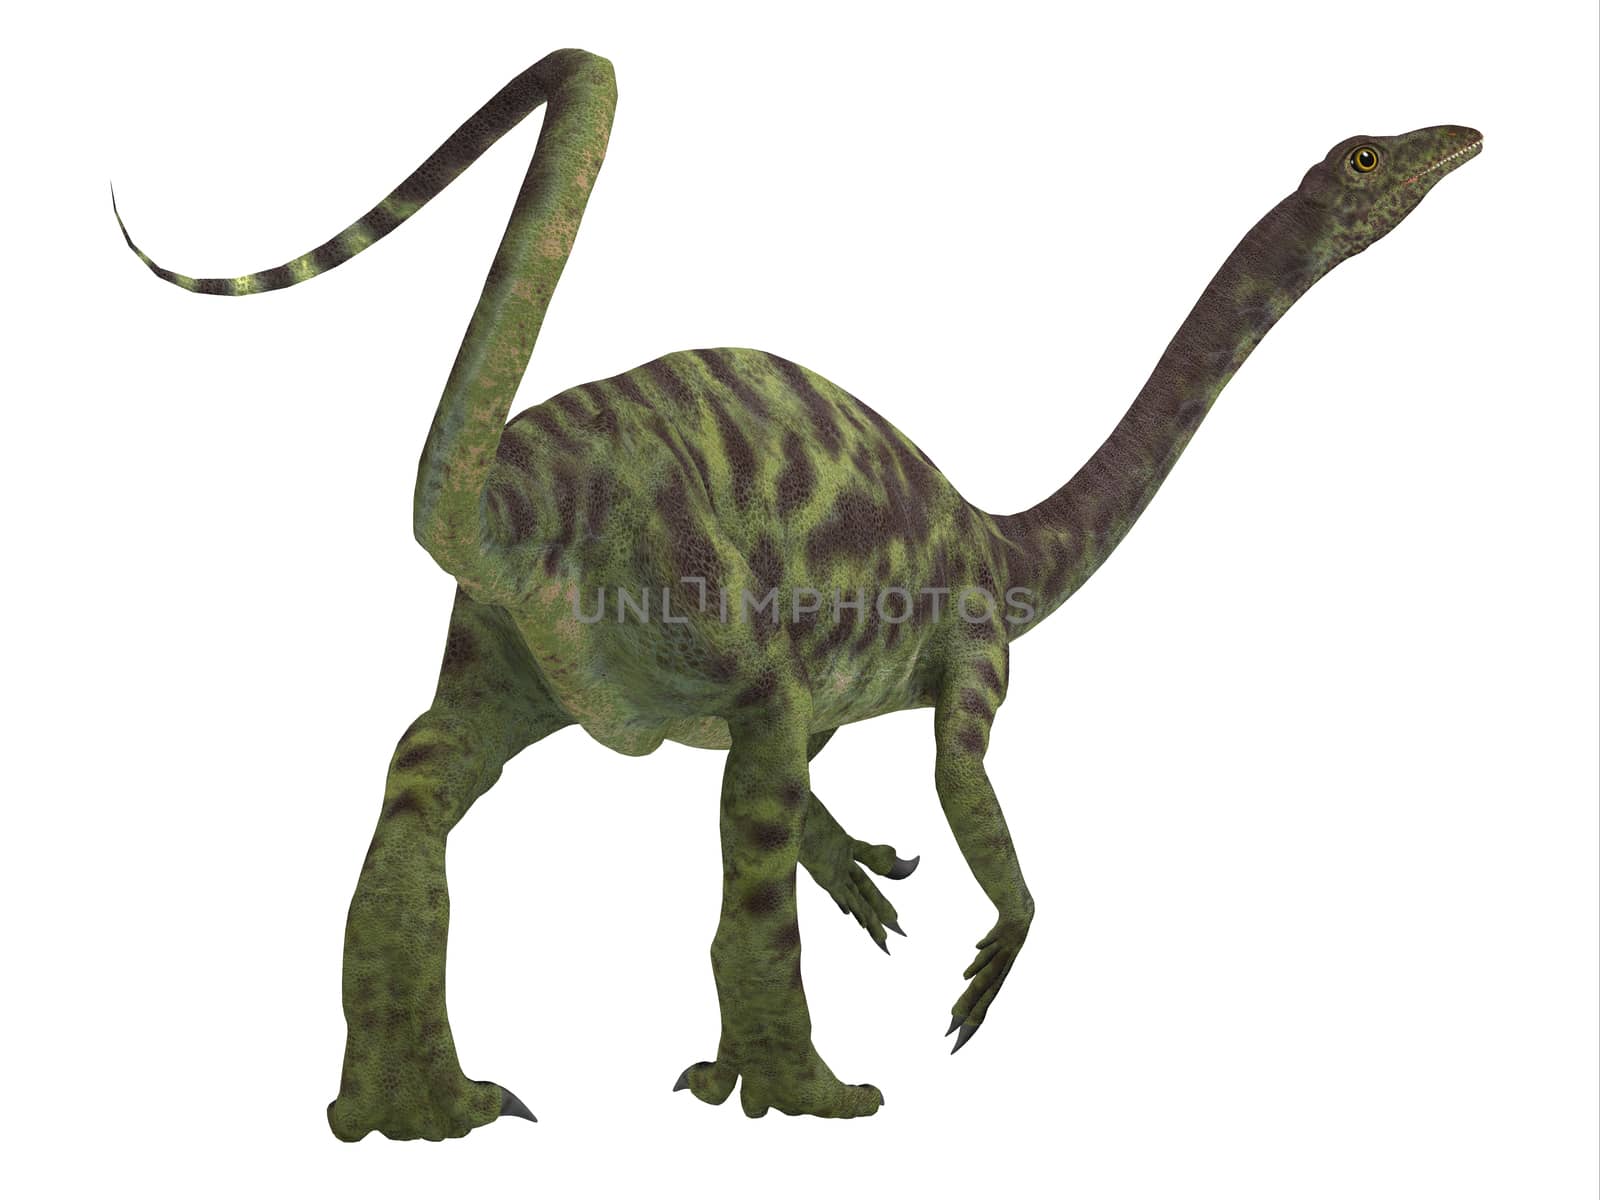 Anchisaurus Dinosaur Tail by Catmando